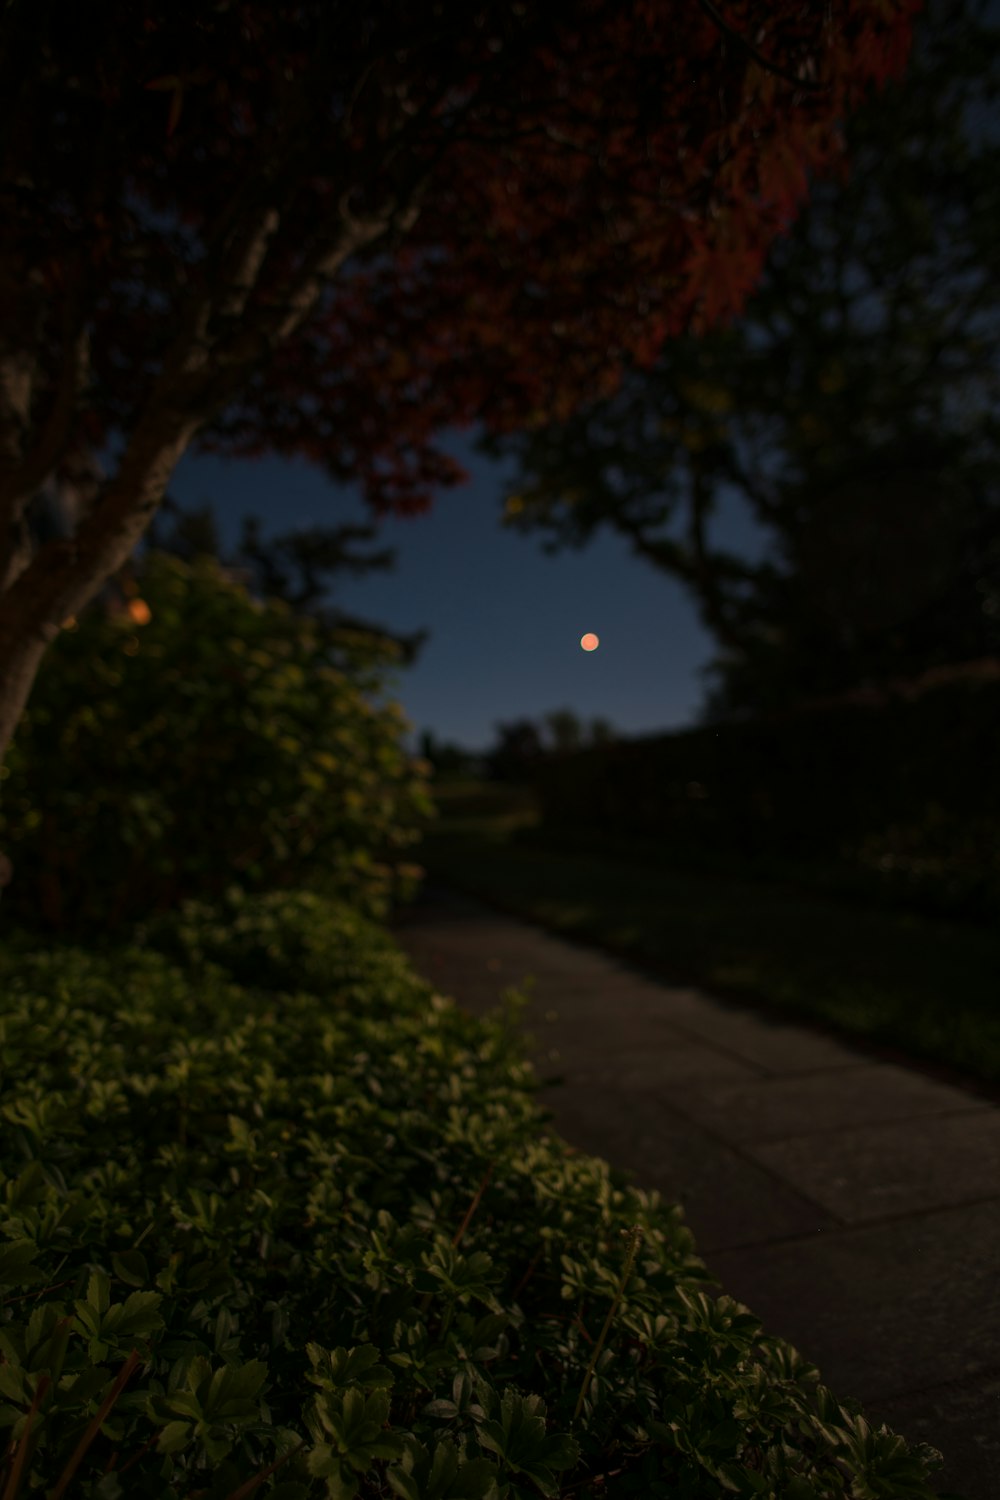 Moon Photo: Bức ảnh về vầng trăng sẽ khiến bạn thấy mình như đang đứng trên mặt trăng. Những bức ảnh này sẽ giúp bạn tìm lại cảm giác kỳ diệu khi ngắm nhìn bầu trời đêm và những vì sao lấp lánh.